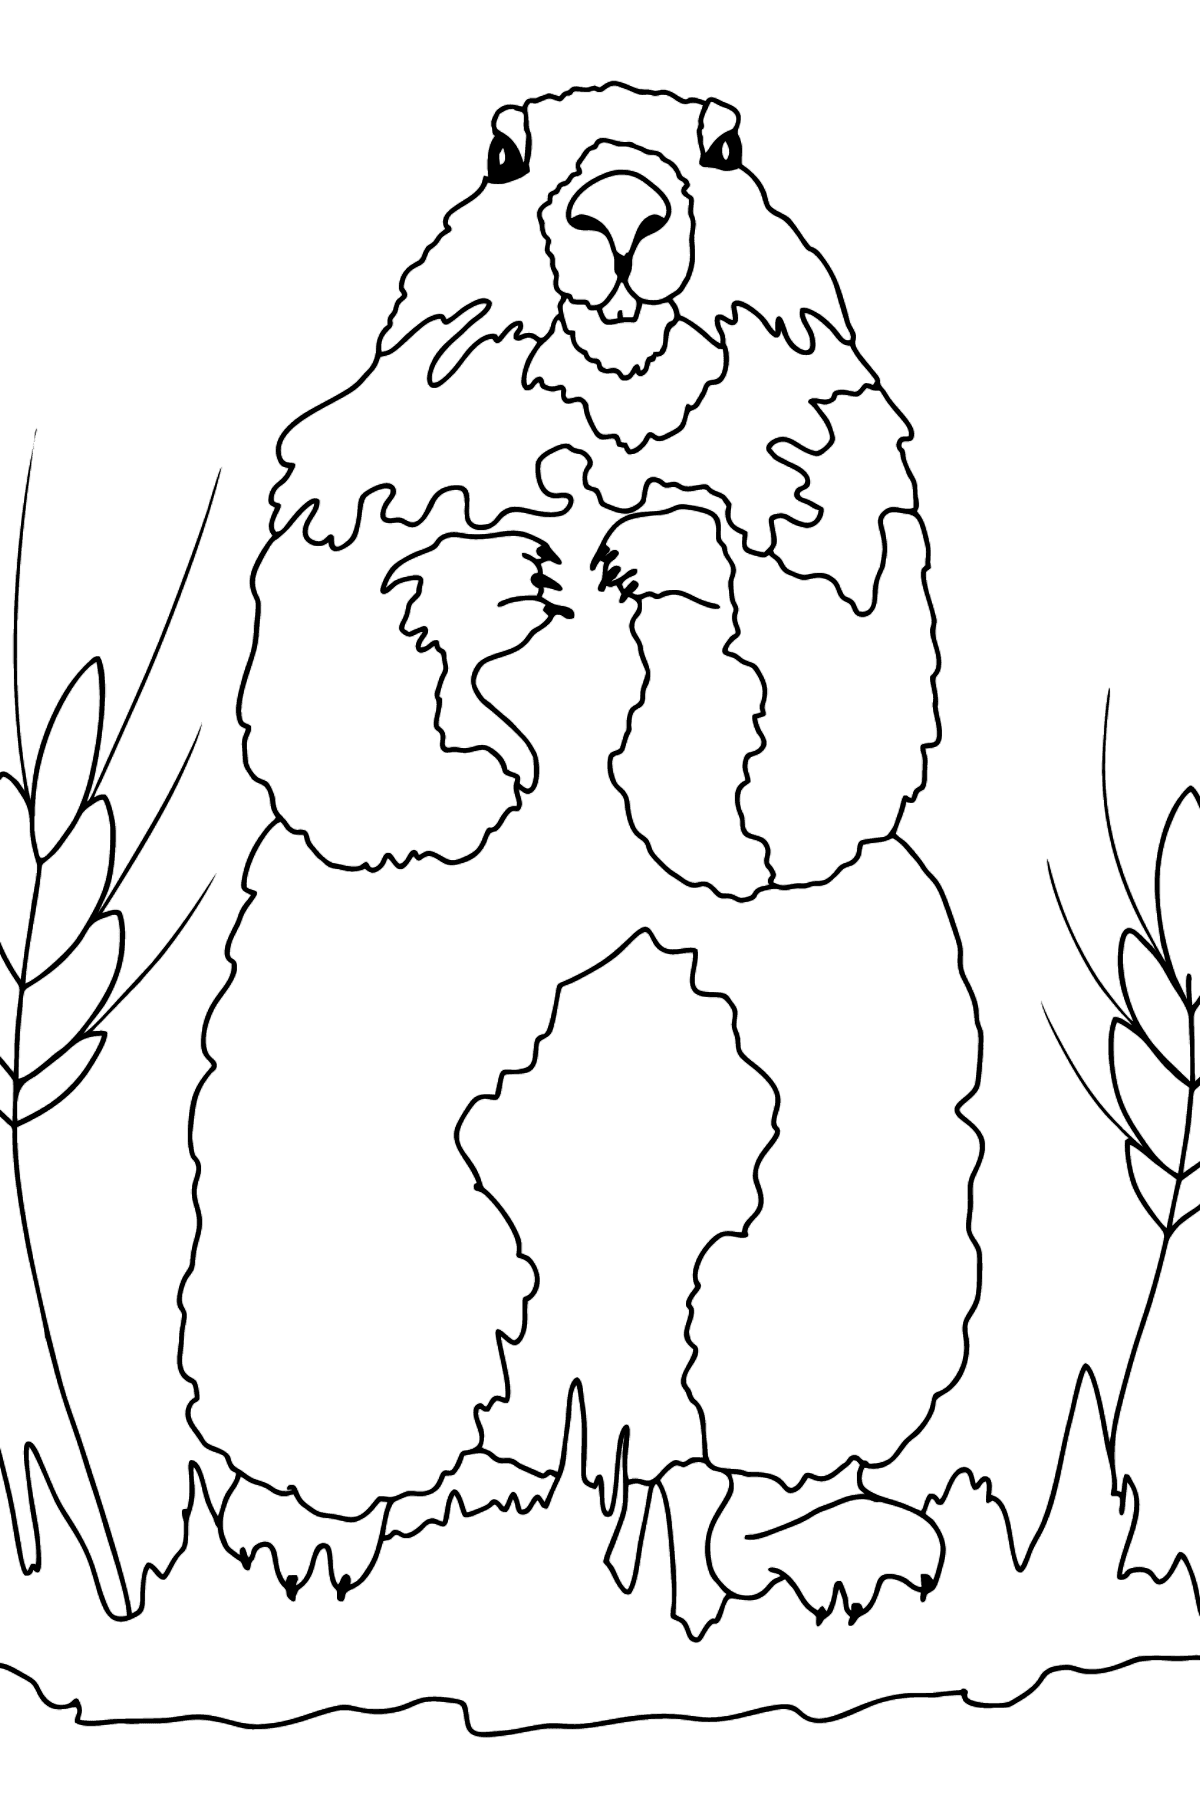 Desenho de marmota para colorir (difícil) - Imagens para Colorir para Crianças